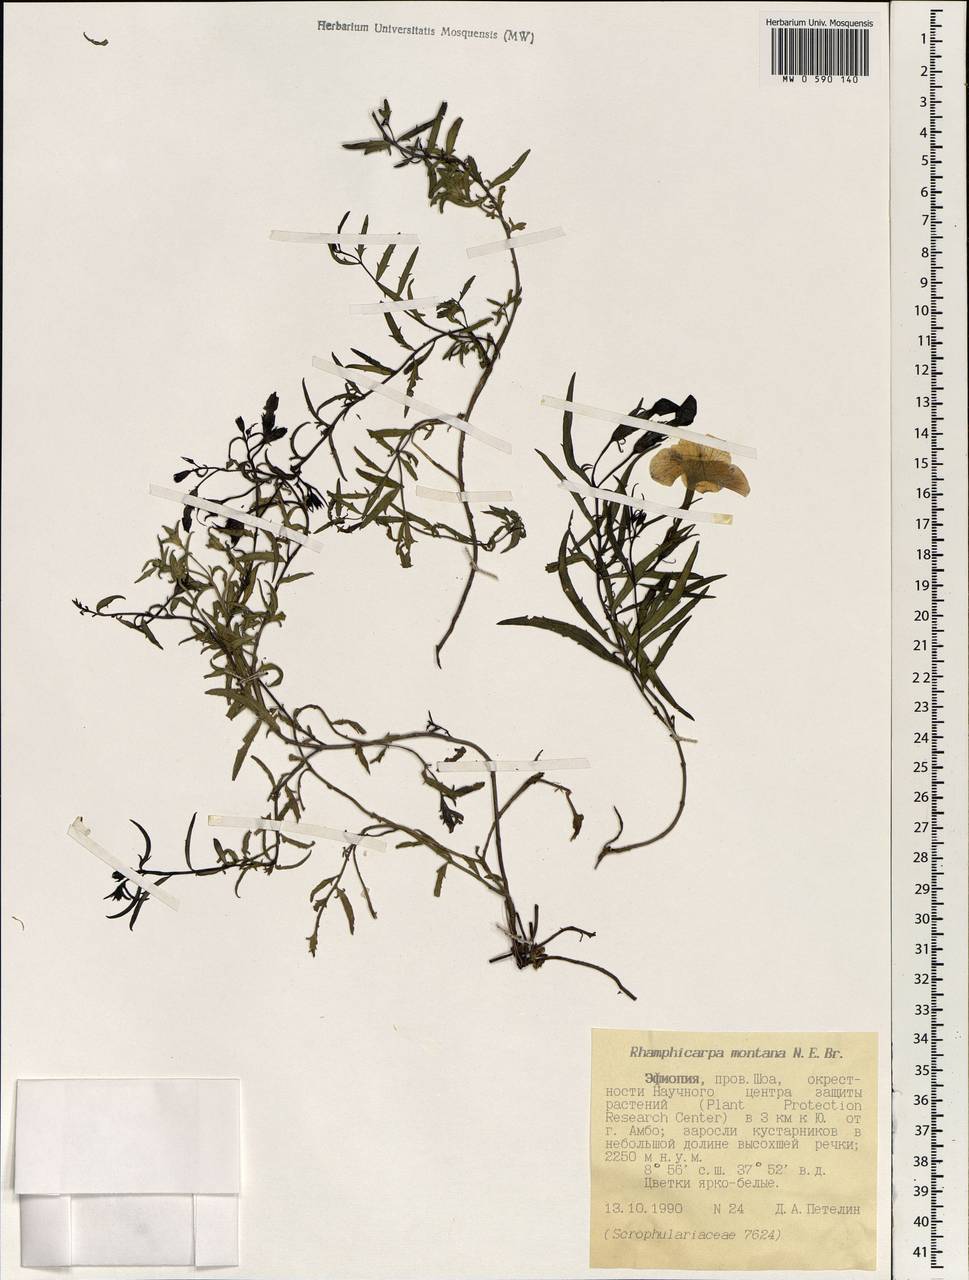 Cycnium tubulosum subsp. montanum (N.E. Br.) O.J. Hansen, Africa (AFR) (Ethiopia)